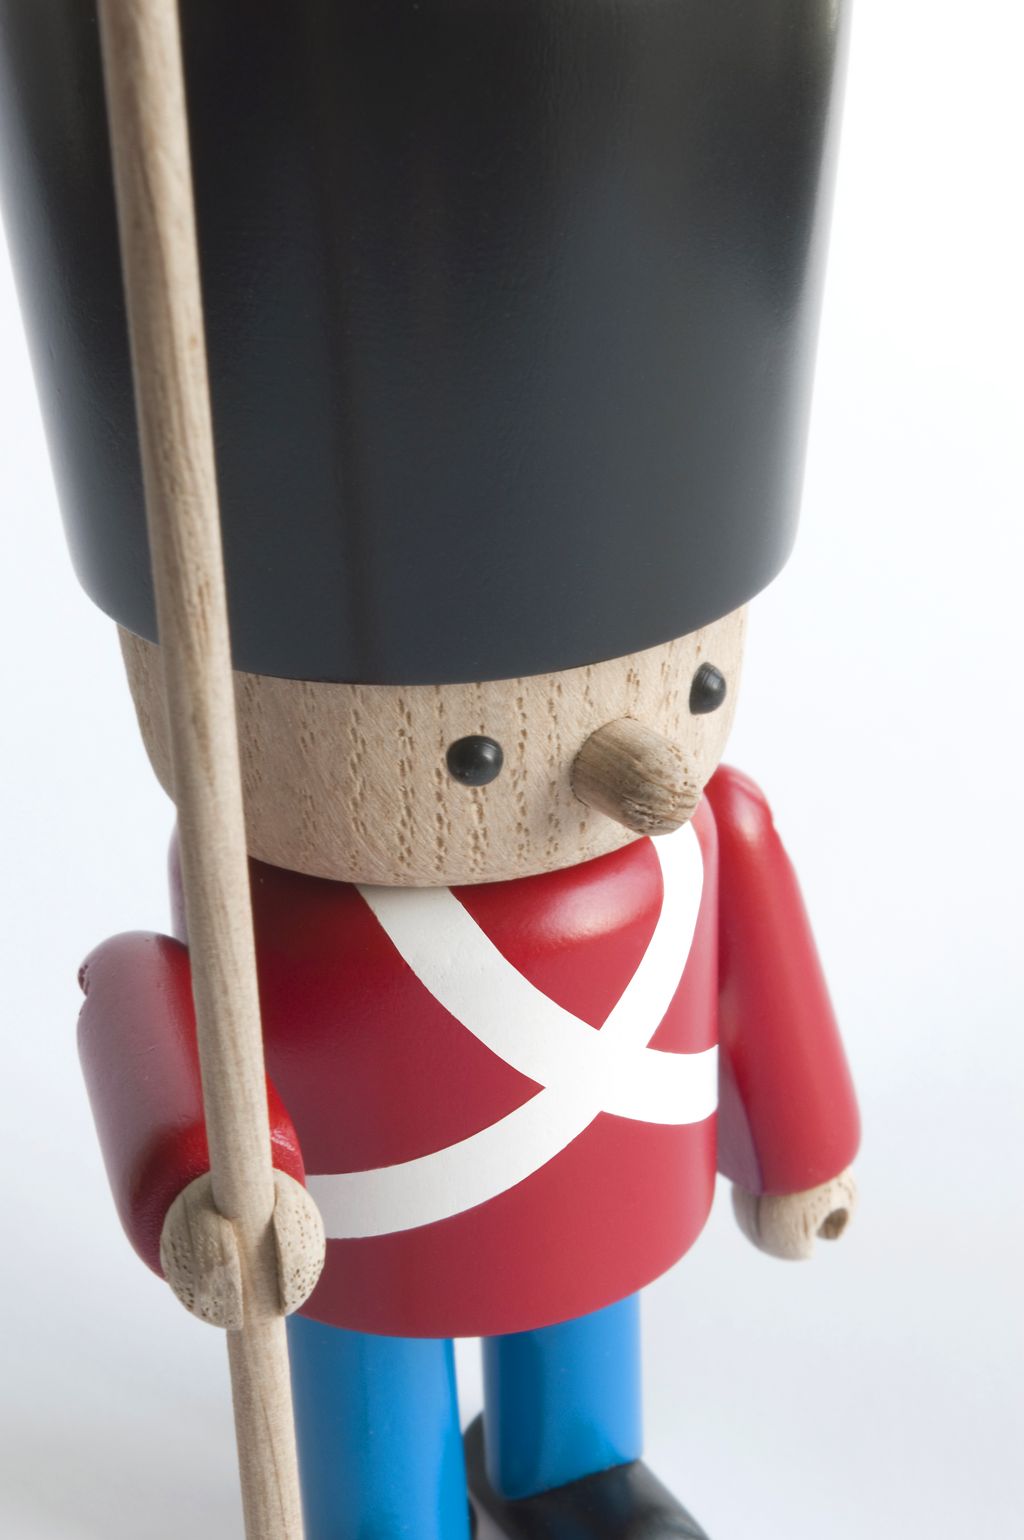 Novoform Design Deense koninklijke bewaker decoratieve figuur, rood uniform